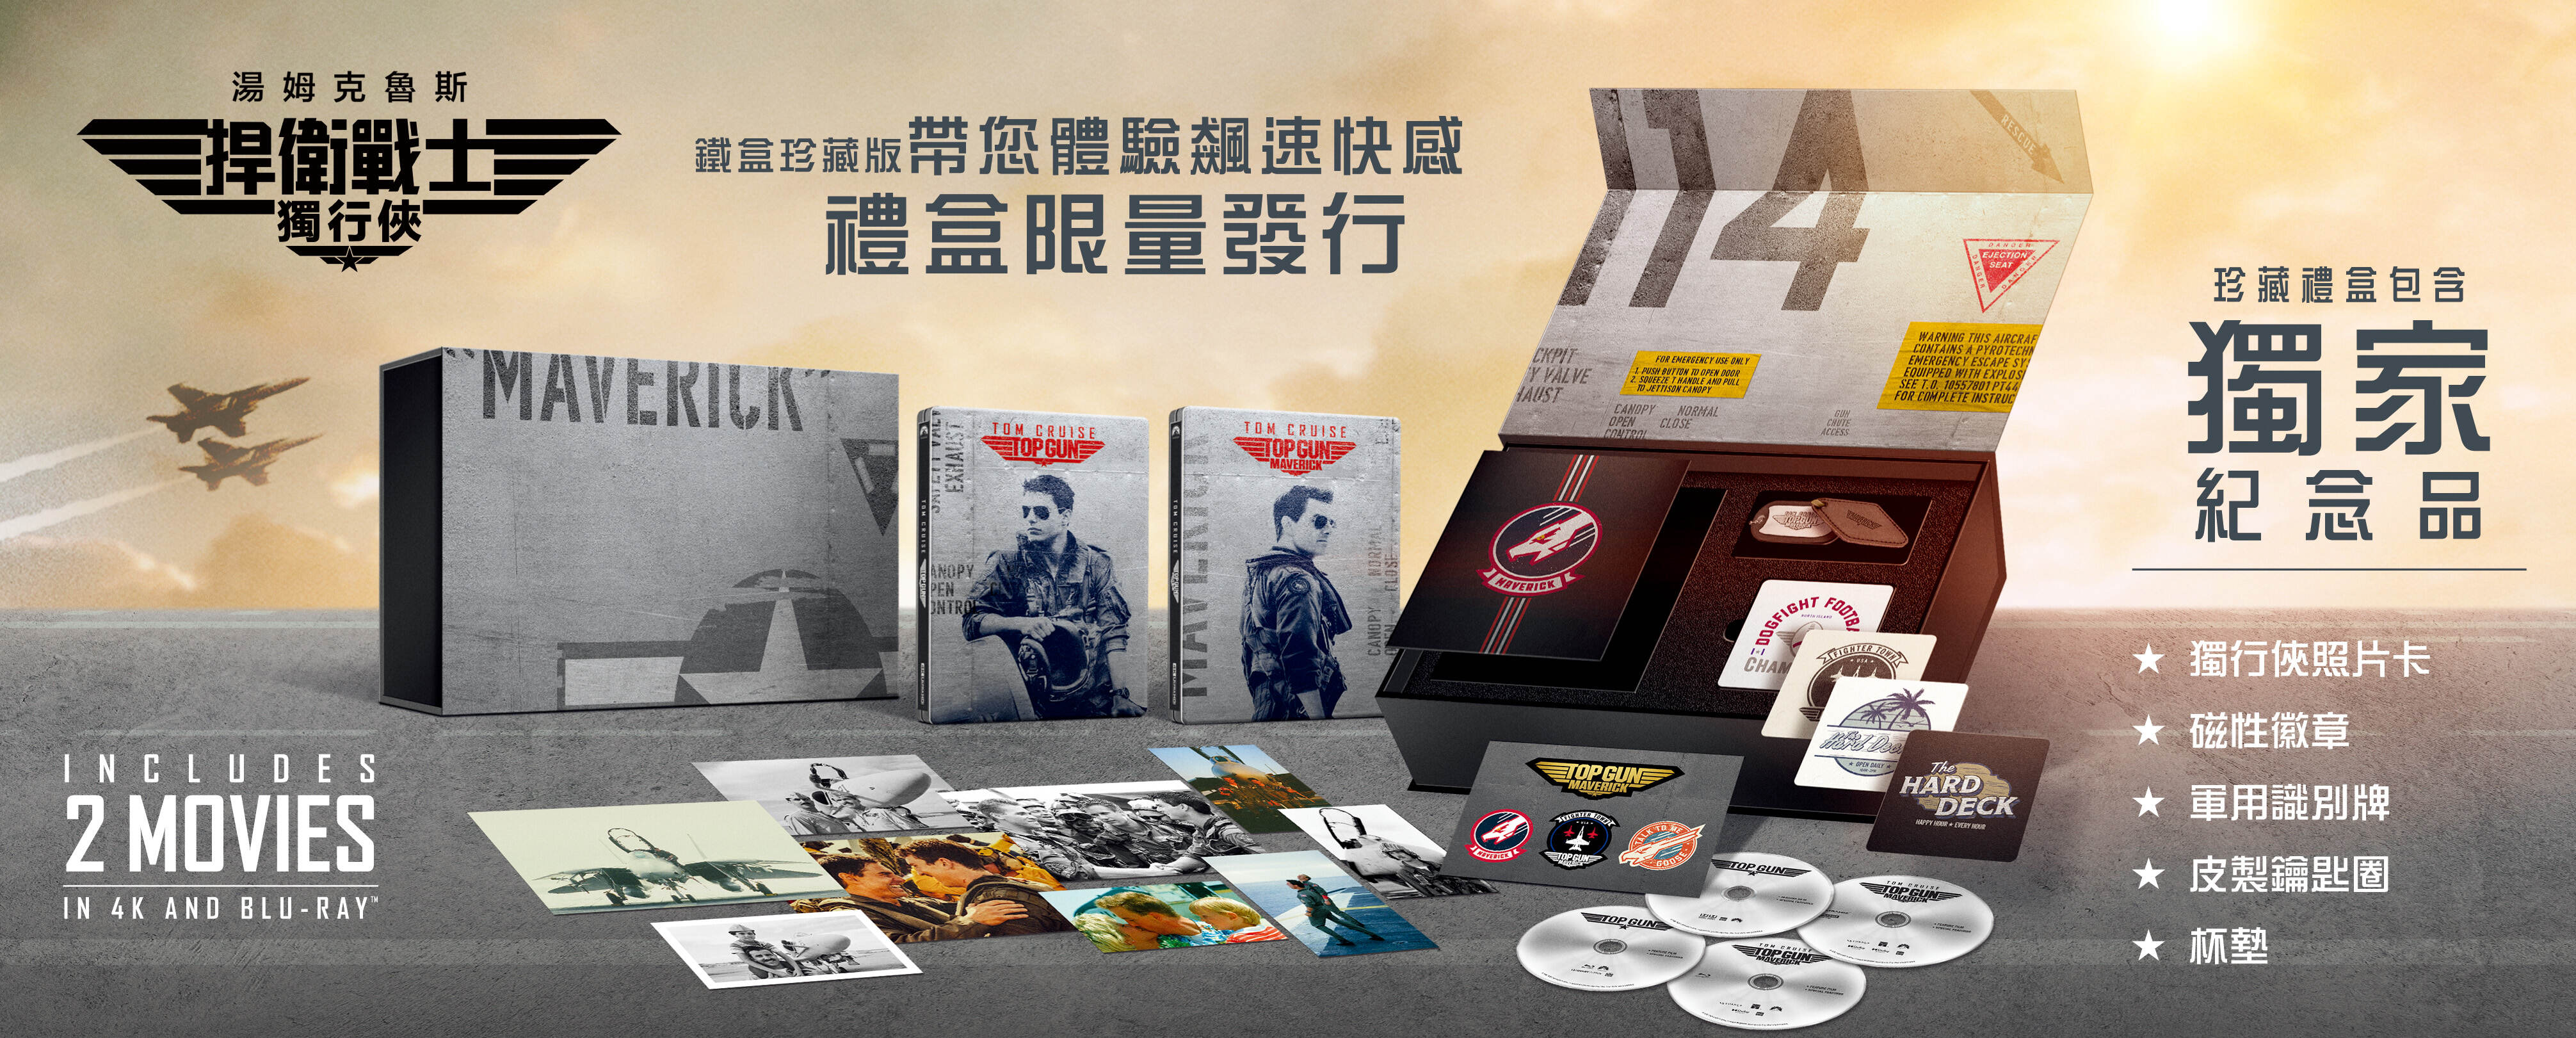 捍衛戰士1+2 UHD+BD 四碟鐵盒珍藏版-PAU2076, 生活娛樂影視直營店